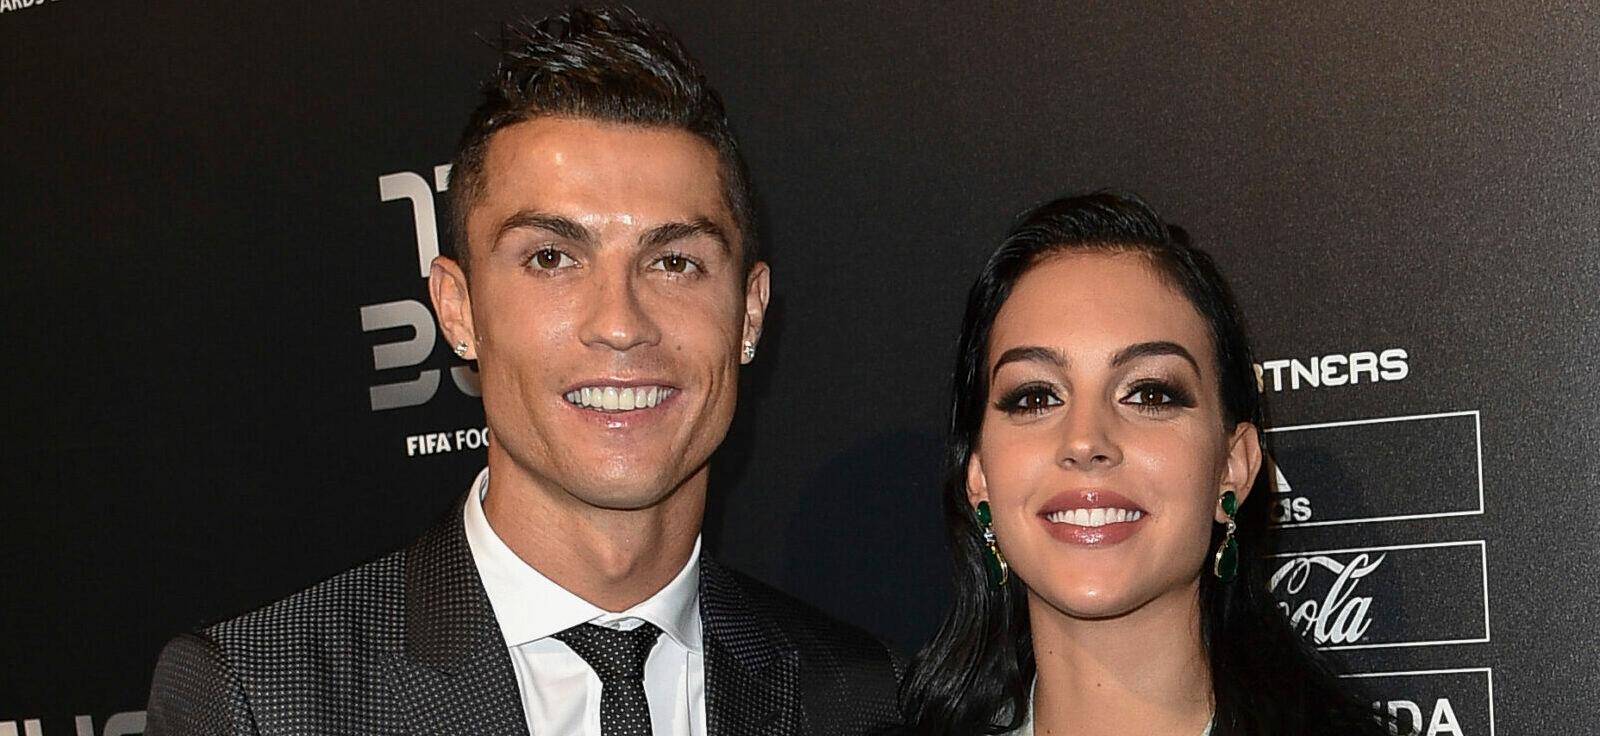 Georgina Rodríguez, Cristiano Ronaldo's Hot Girlfriend Bares Her